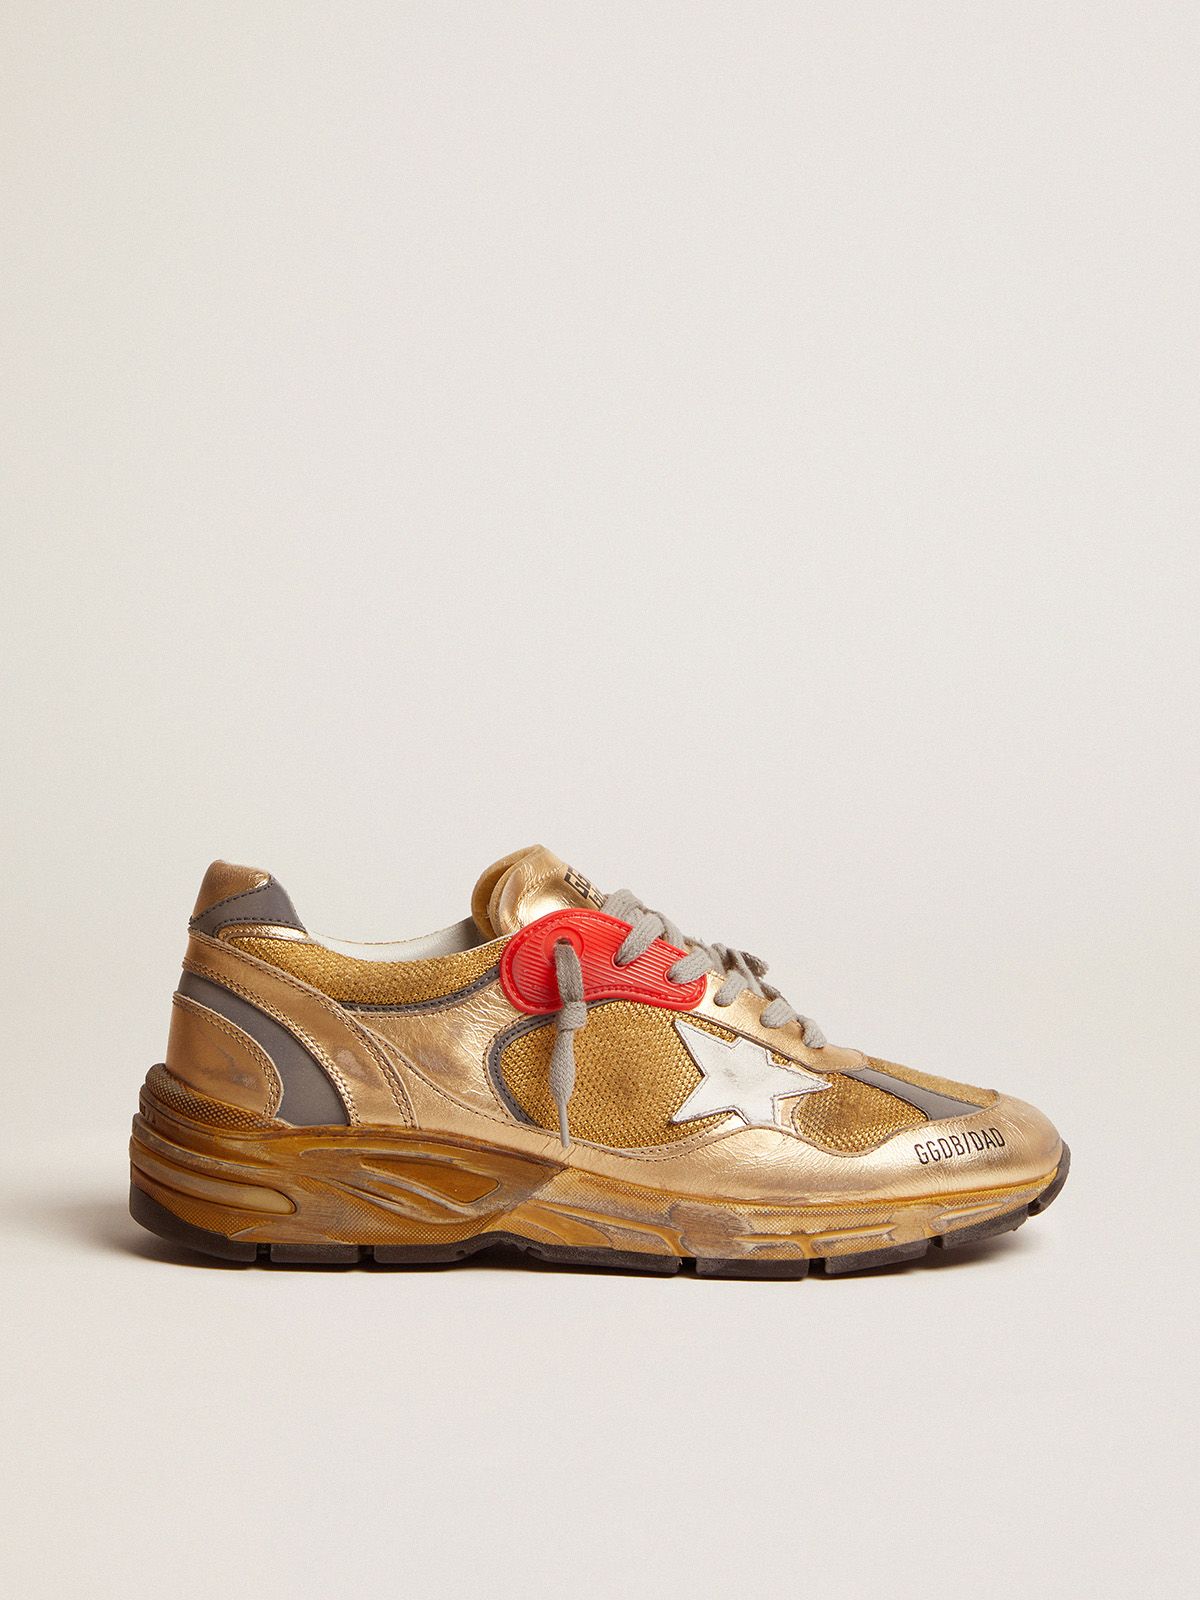 Zapatillas deportivas Dad-Star color dorado con acabados desgastados